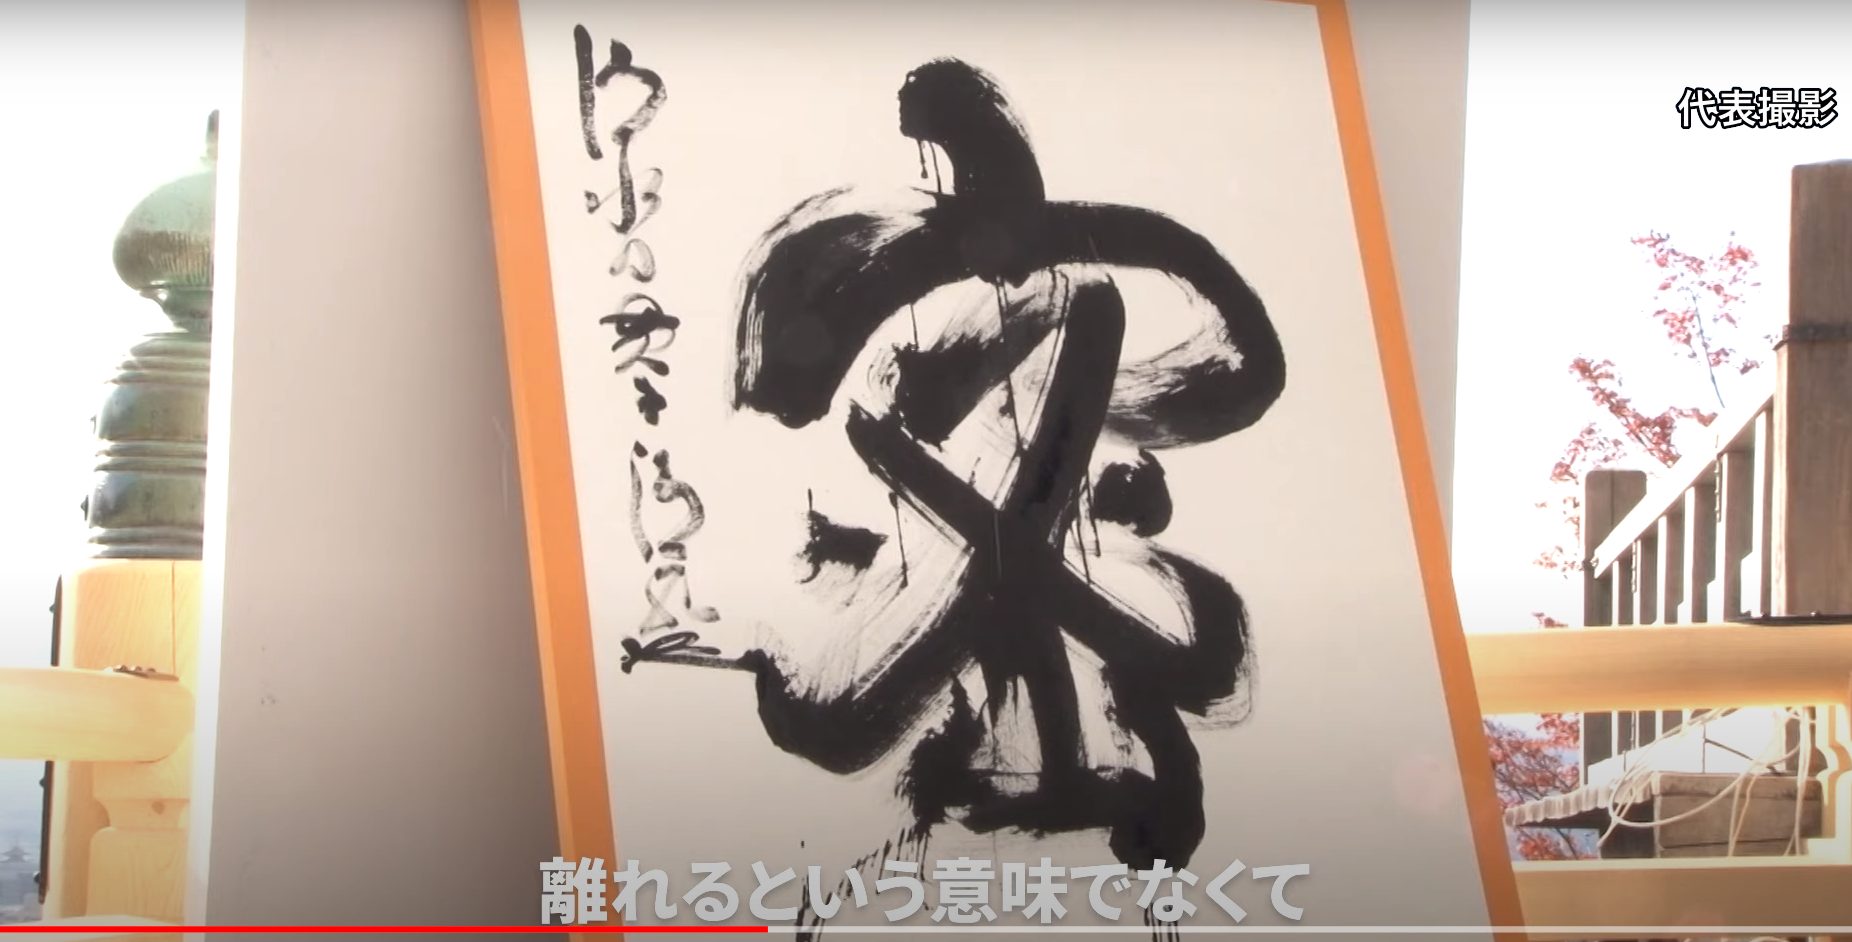 Kanji do Ano: “Mitsu” é escolhido o kanji de 2020